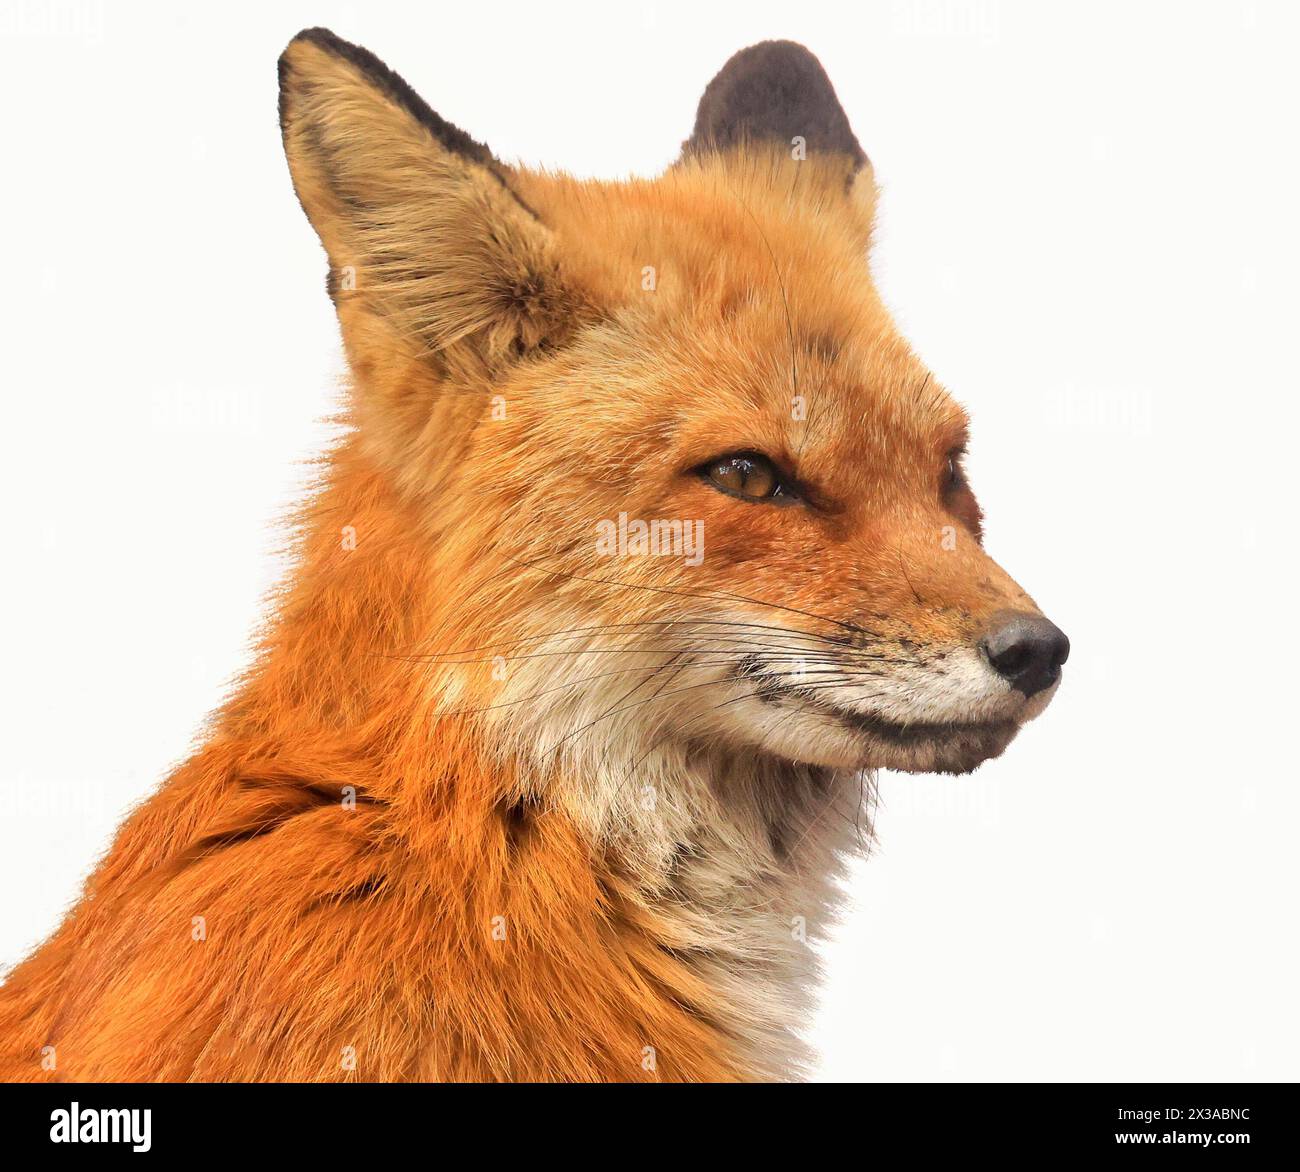 Portrait de profil de renard rouge isolé sur fond blanc Banque D'Images